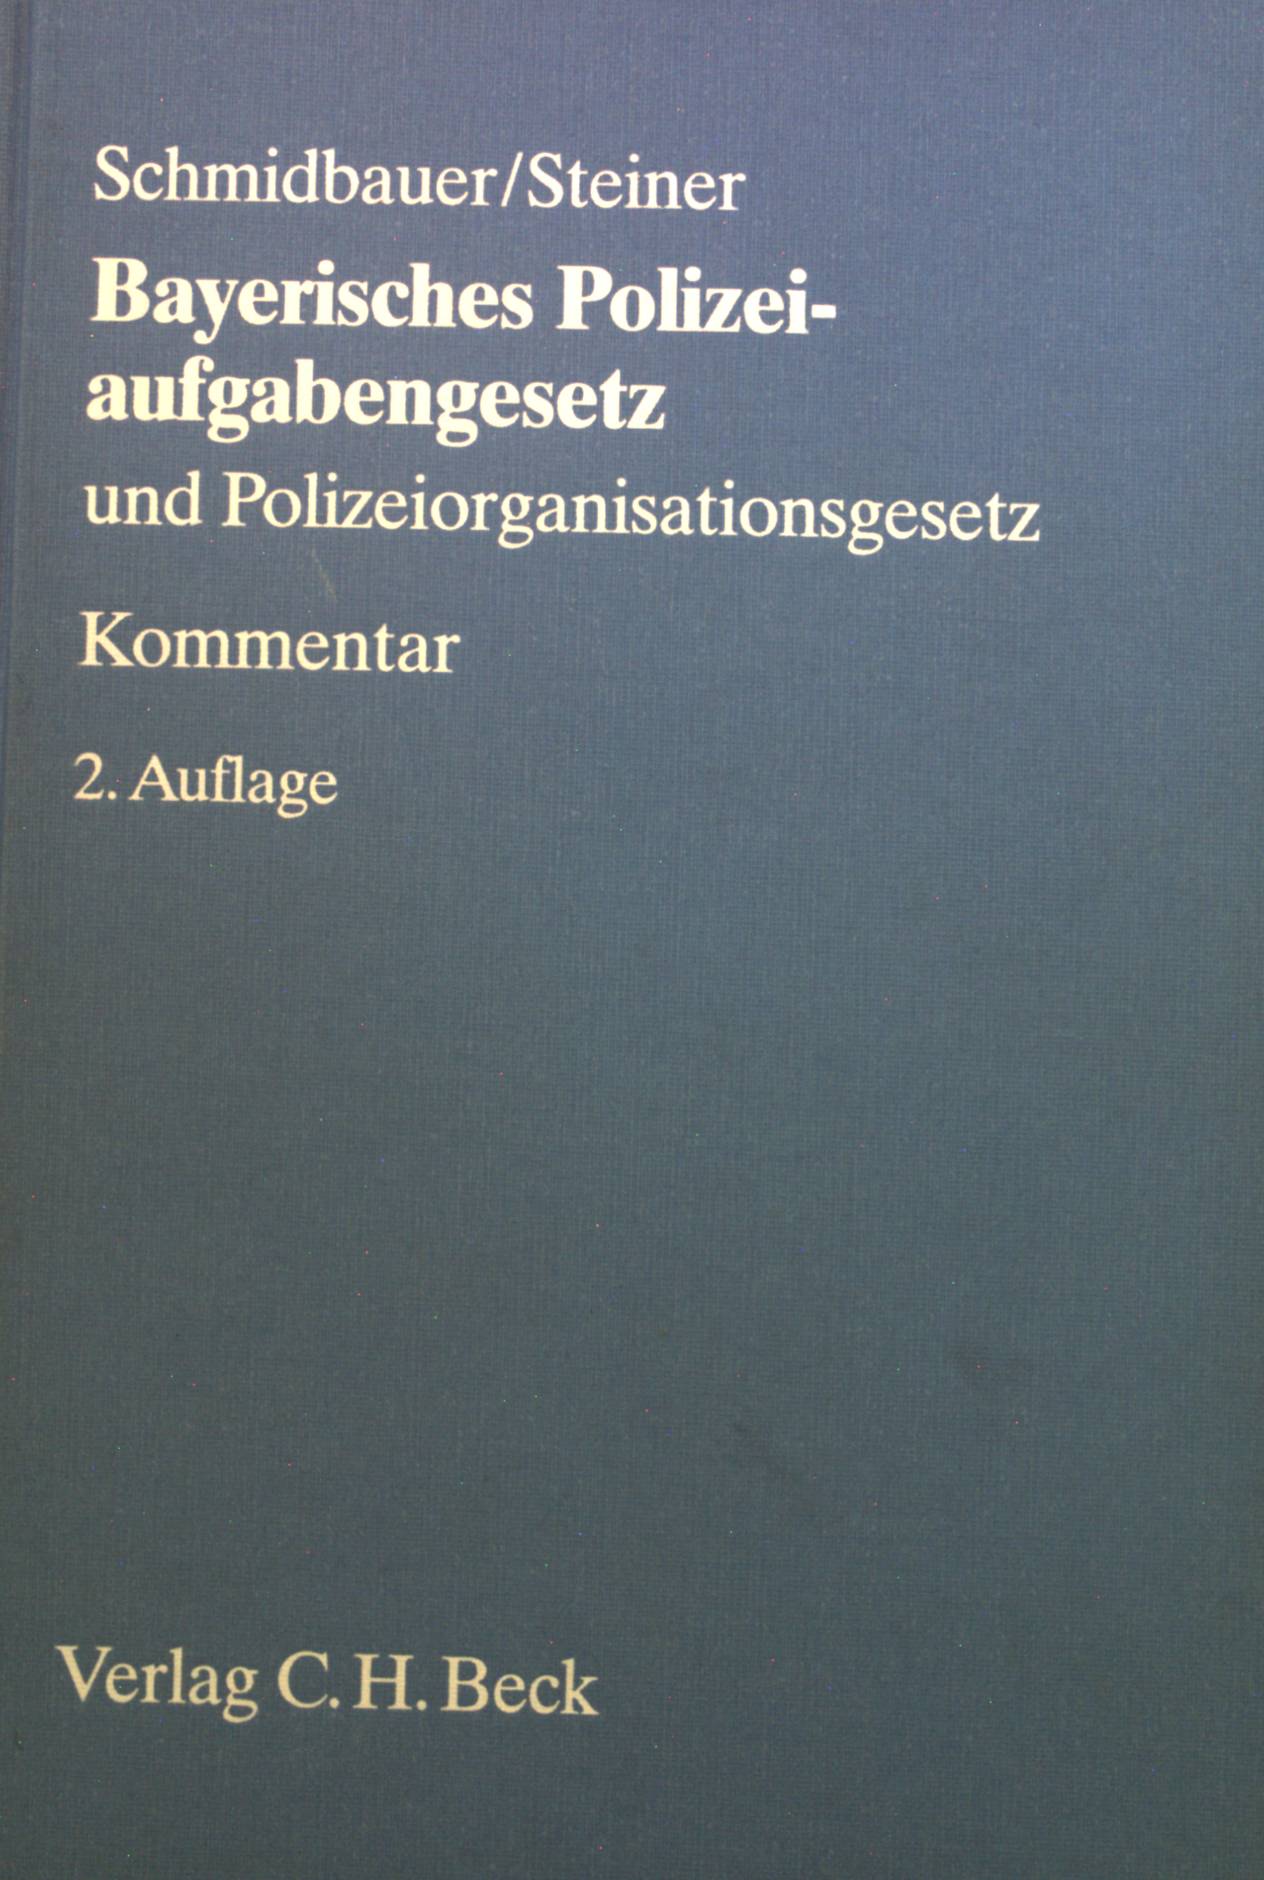 Bayerisches Polizeiaufgabengesetz und Bayerisches Polizeiorganisationsgesetz : Kommentar.  2. Aufl. - Schmidbauer, Wilhelm, Udo Steiner und Eberhard Roese